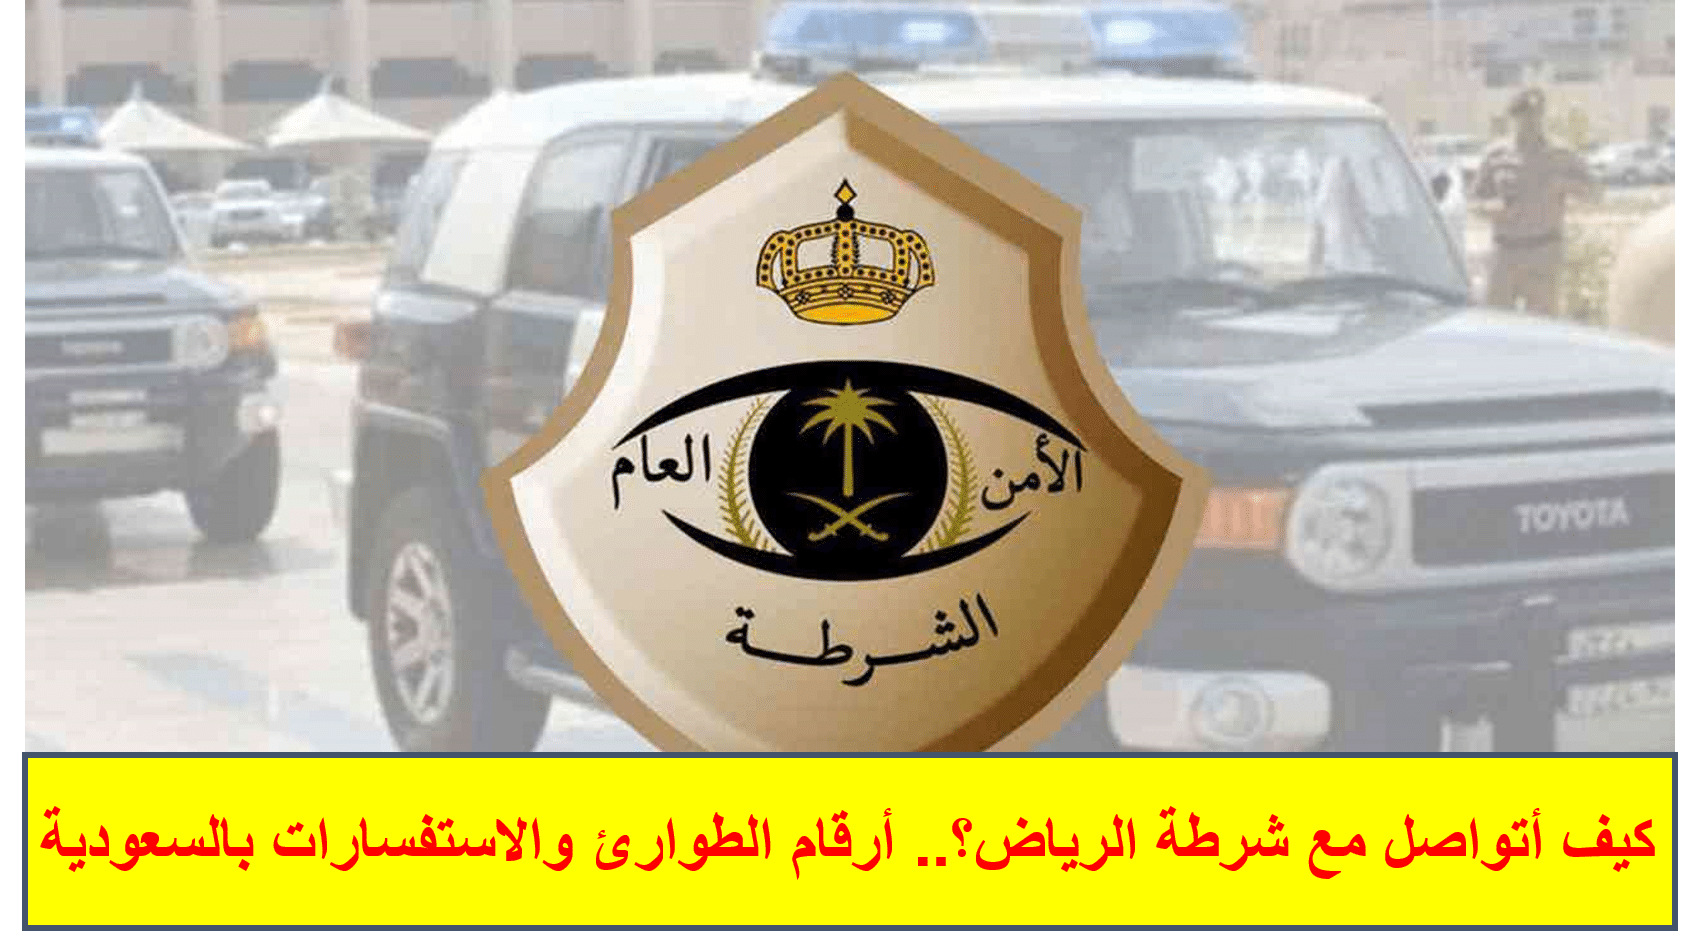 كيف أتواصل مع شرطة الرياض؟